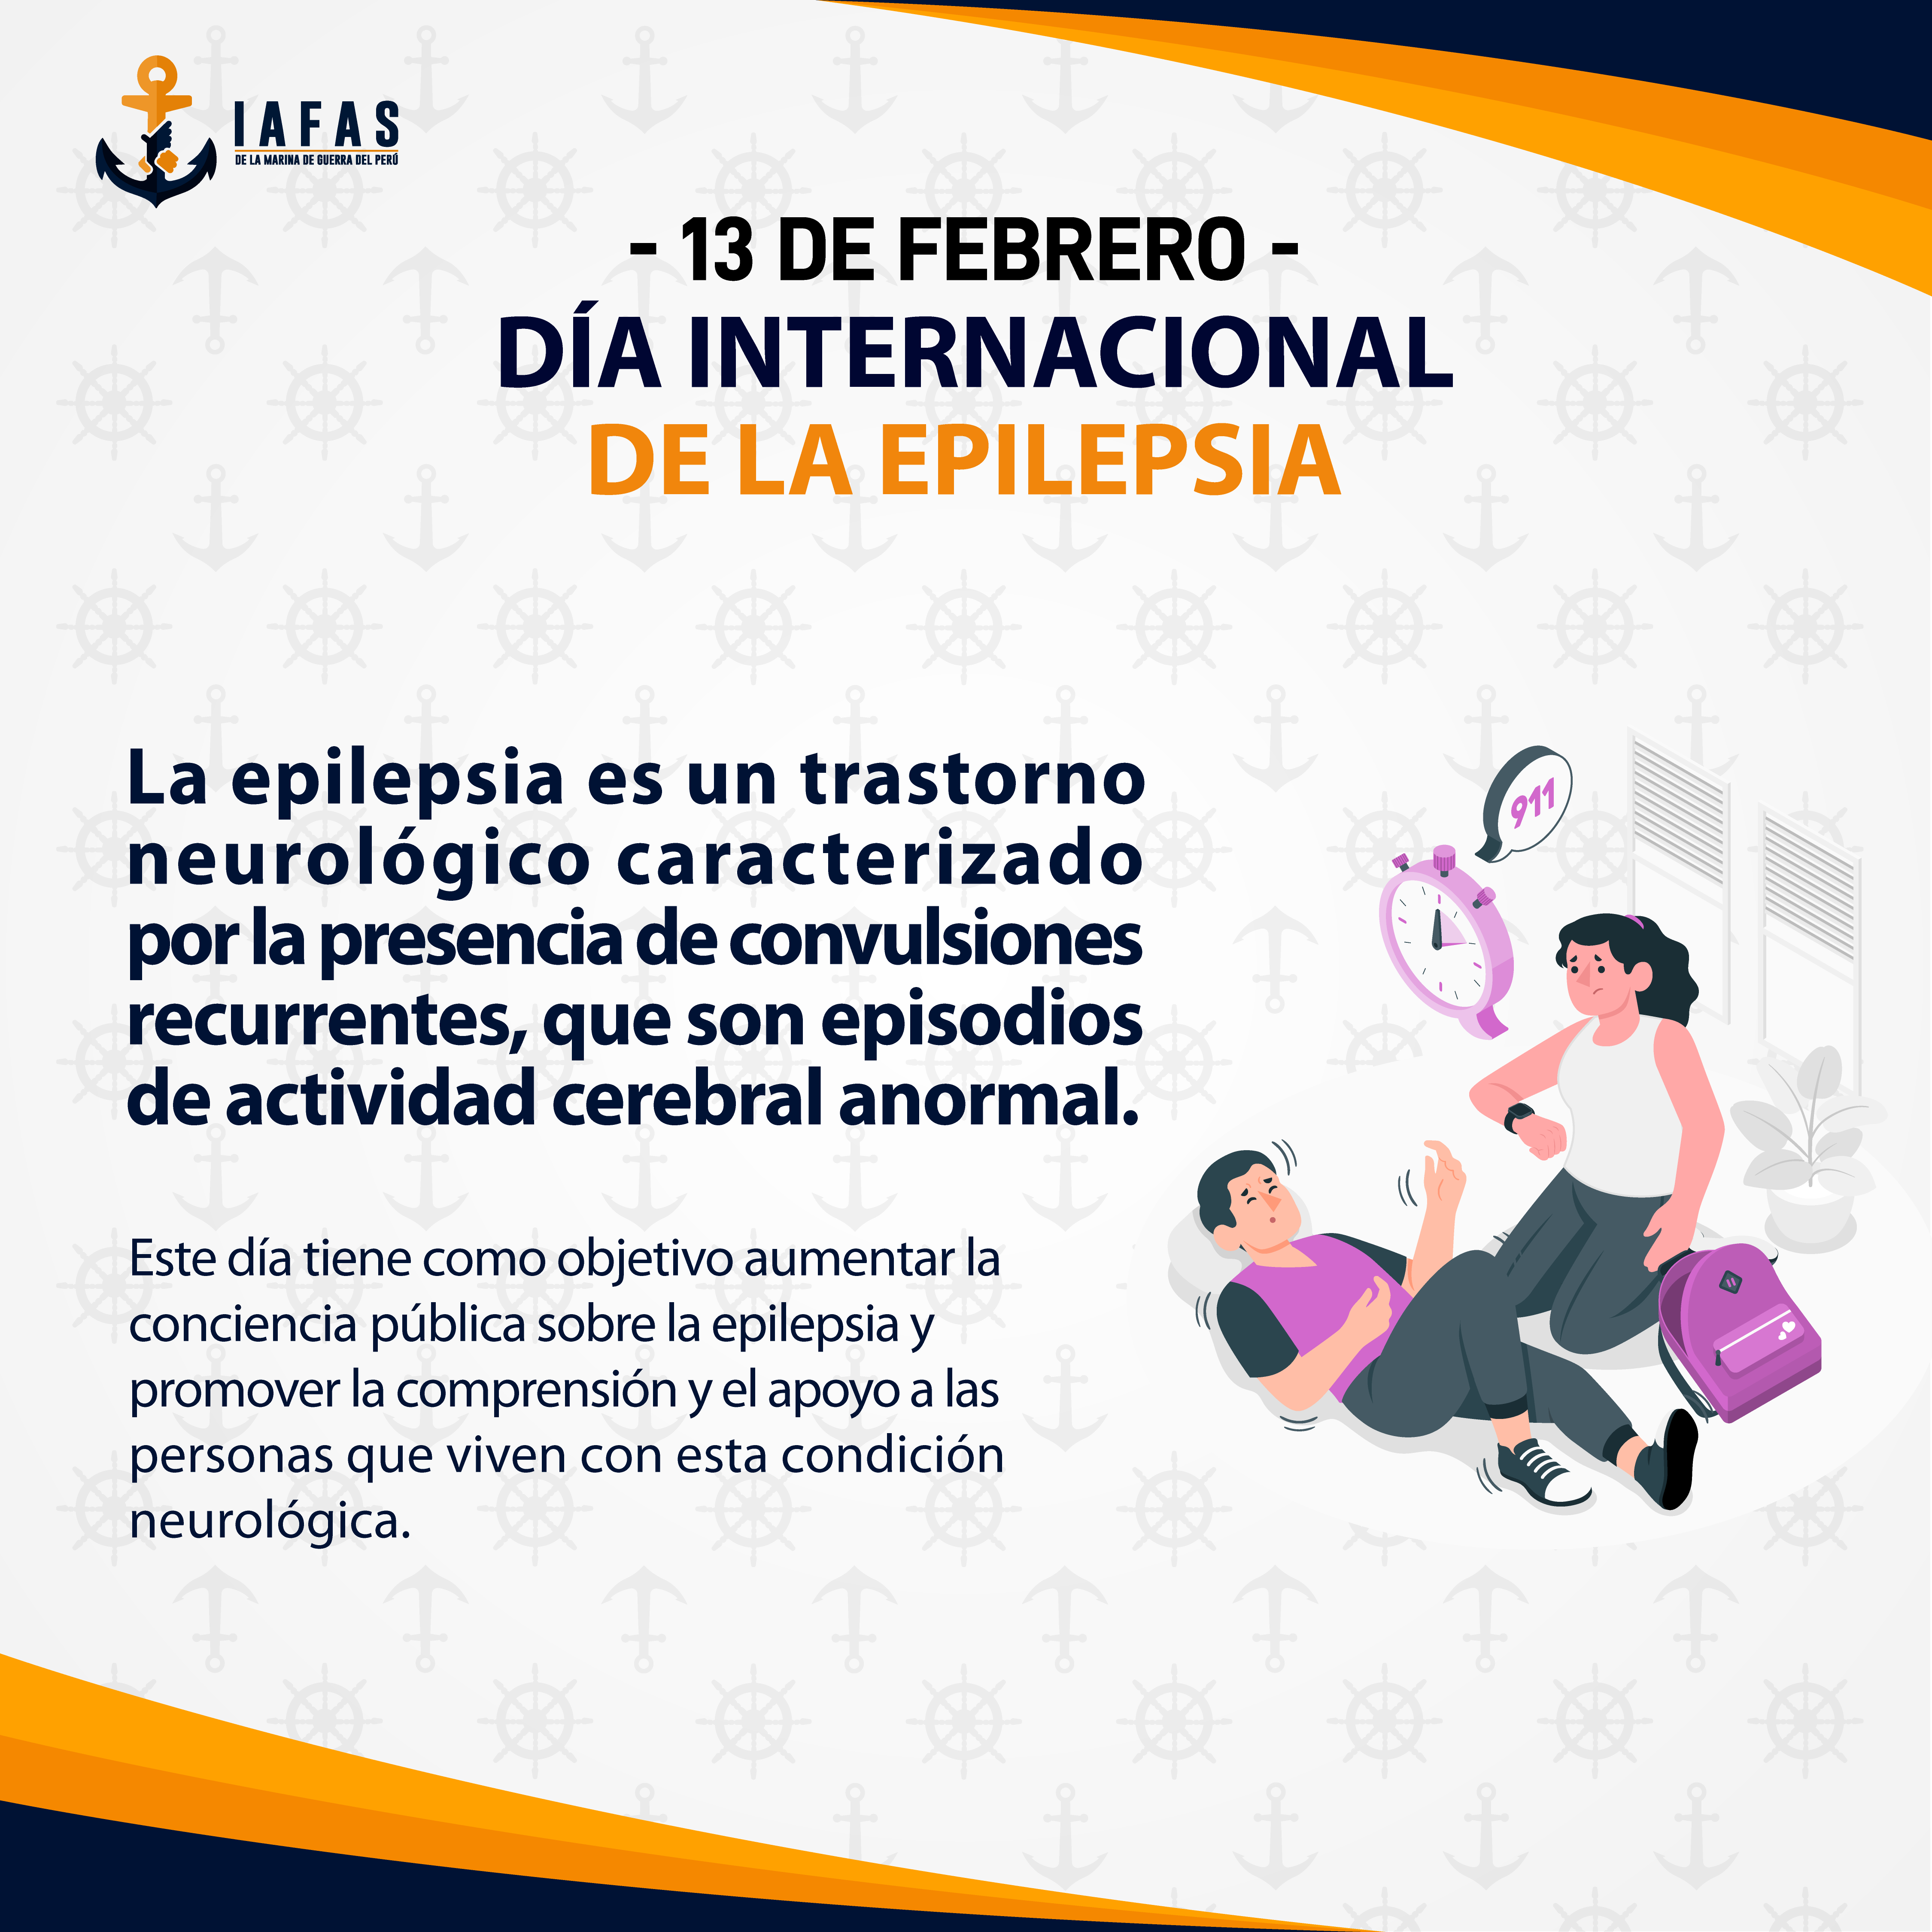 Día Internacional de la epilepsia (13 de febrero)